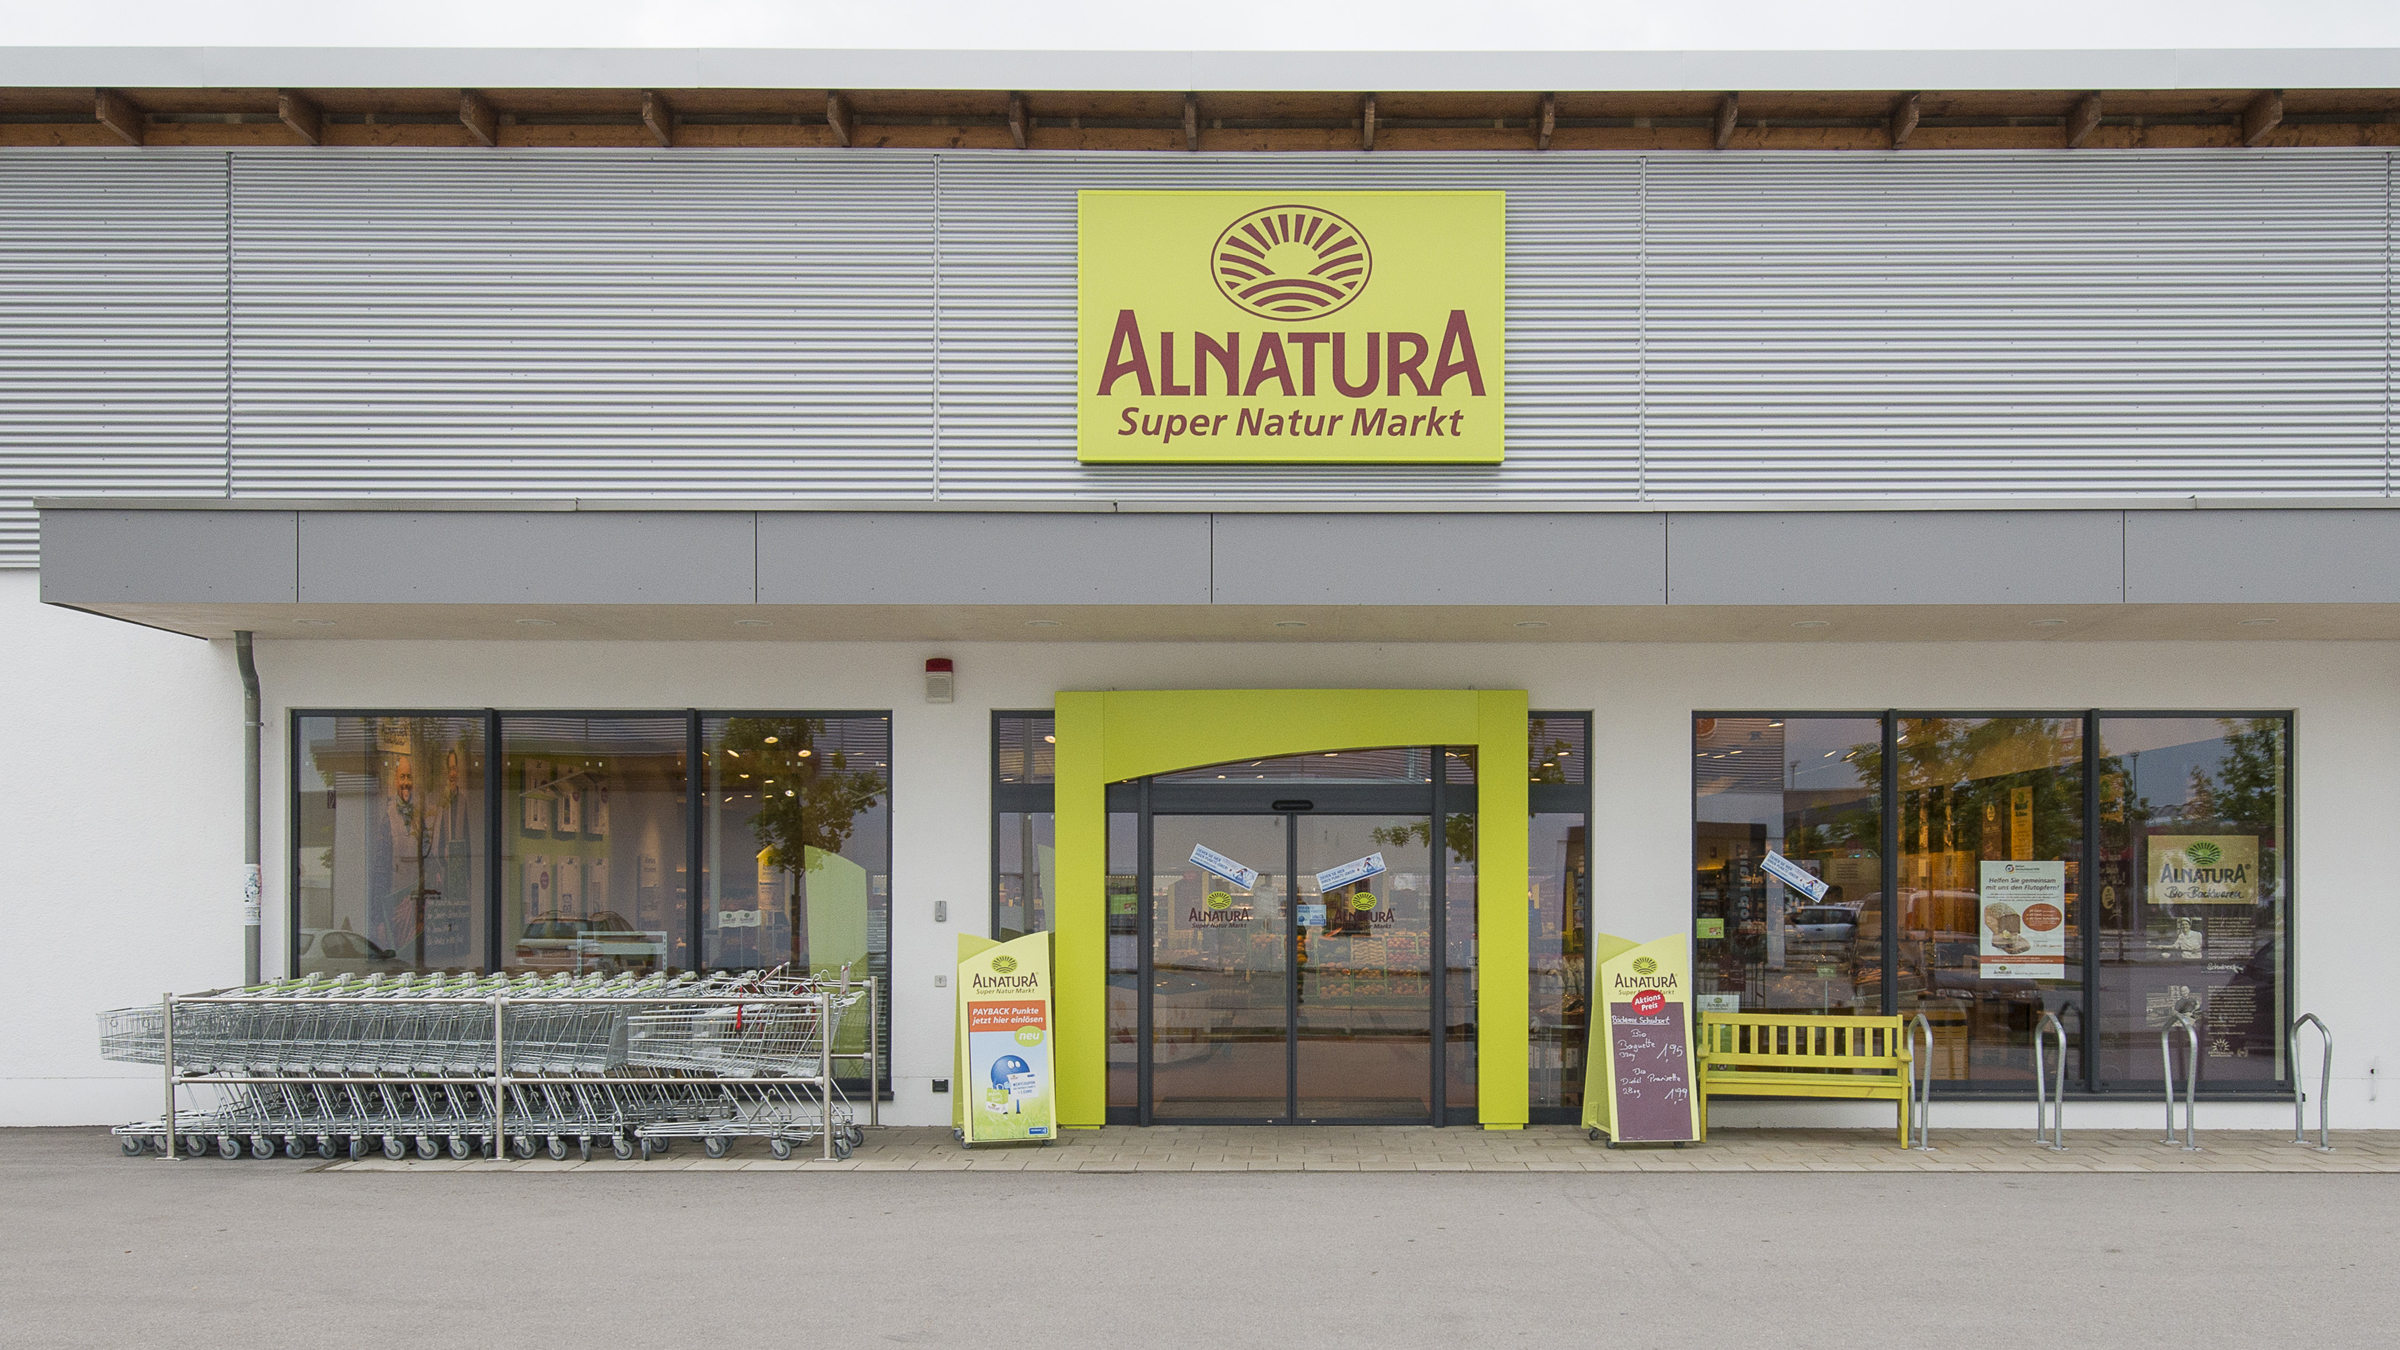 Ihr Alnatura Super Natur Markt in Aschheim